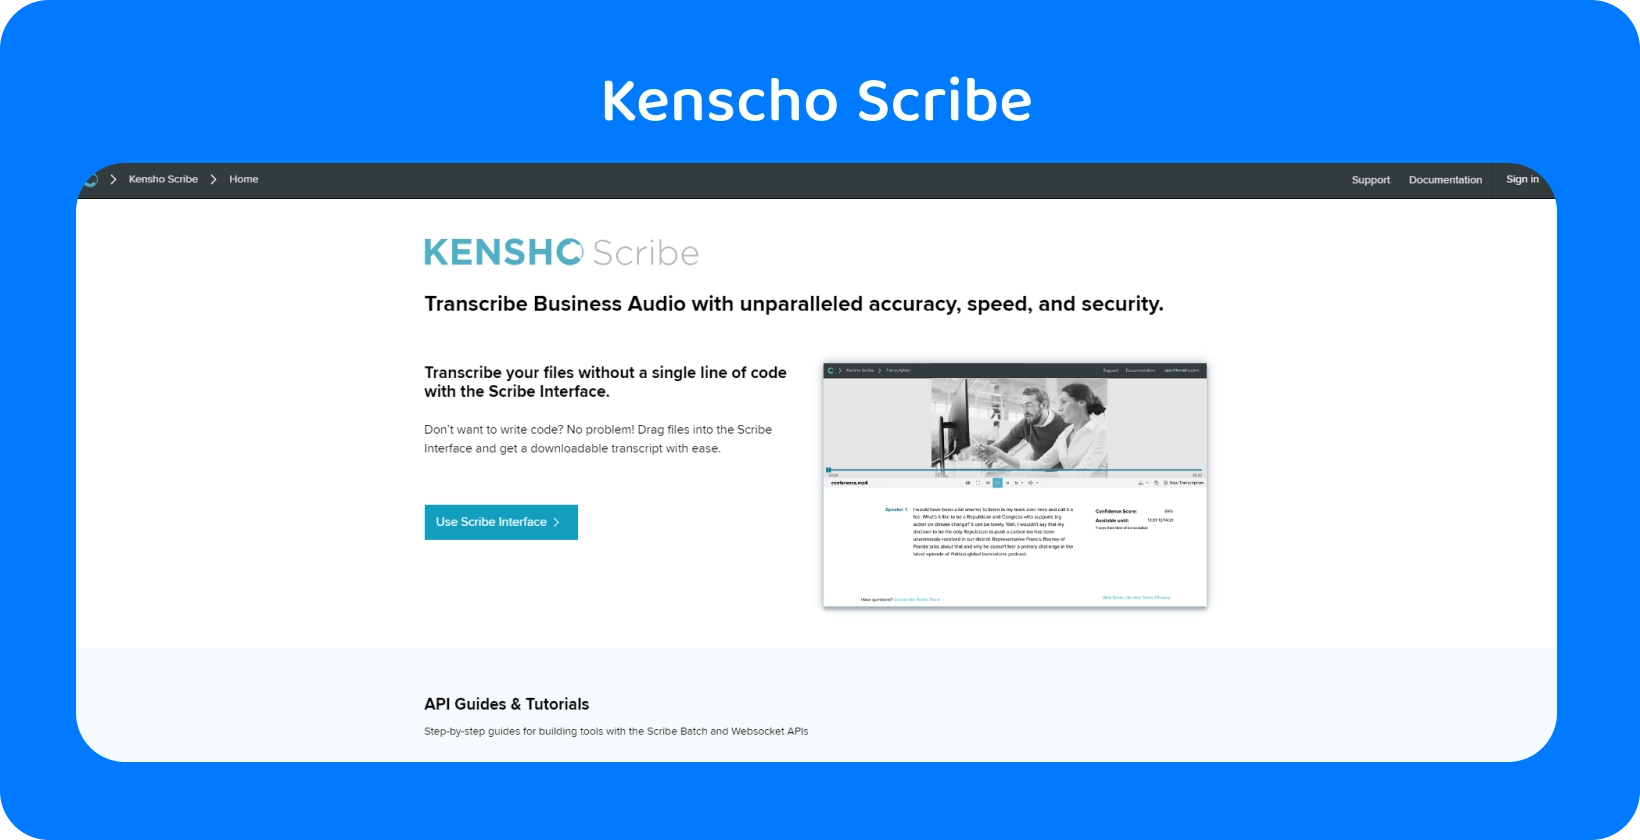 Página do site da Kensho com texto 'SOLUÇÕES', oferecendo ferramentas avançadas de AI que complementam o ditado do Word.